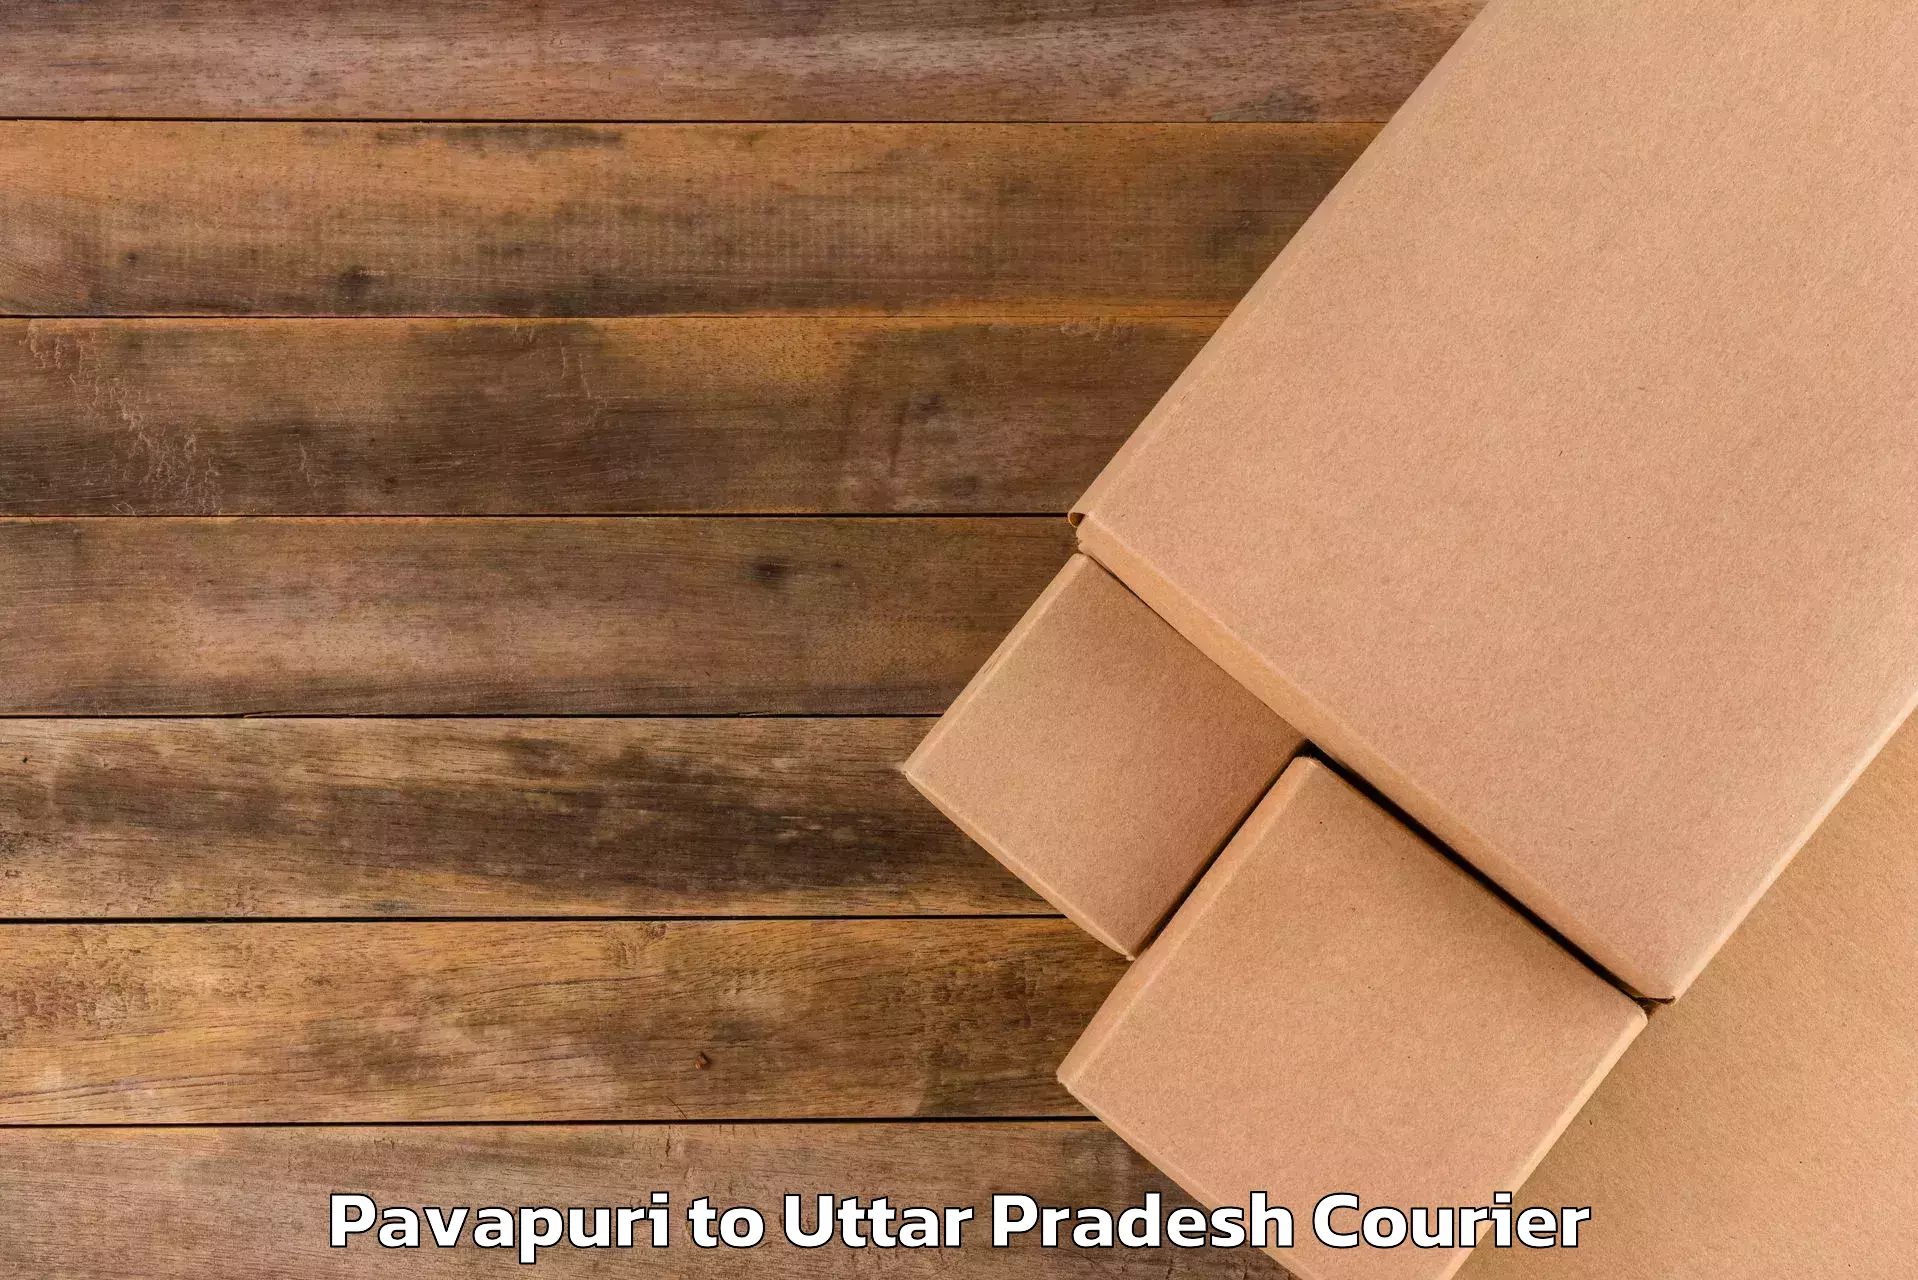 Personal baggage courier Pavapuri to Uttar Pradesh